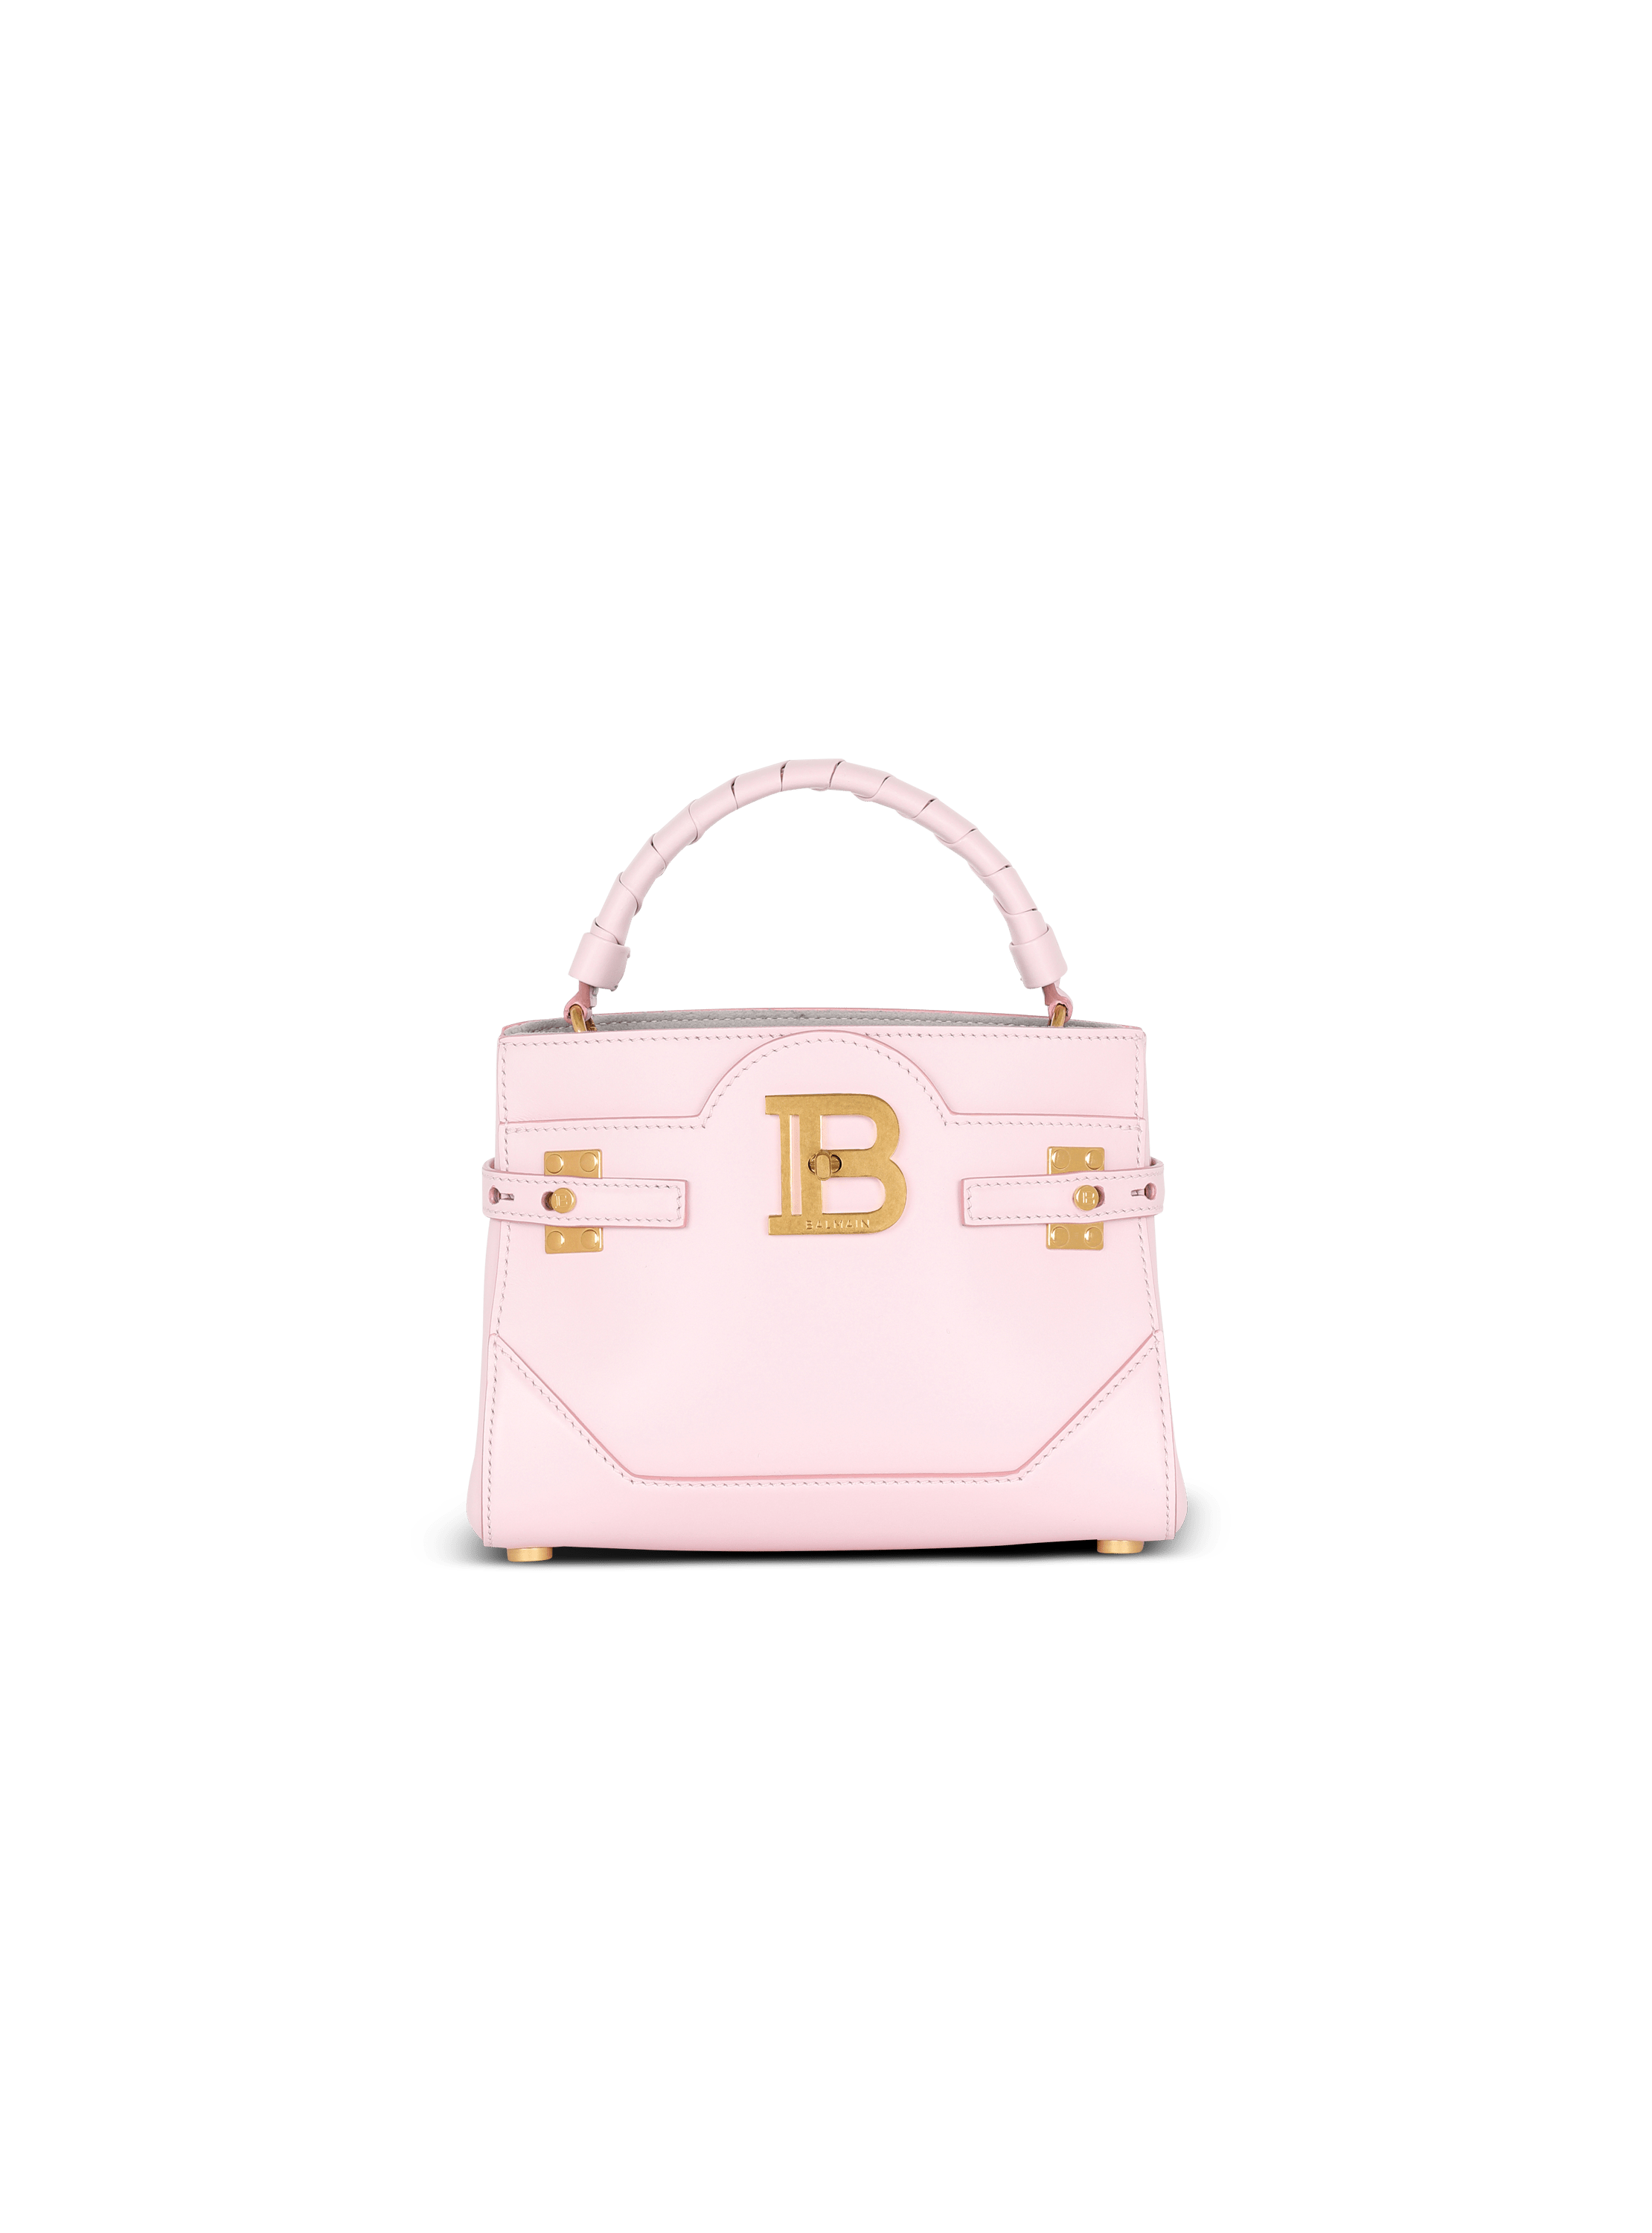 Luxury bag - Burrow 22 shoulder bag in light pink leather